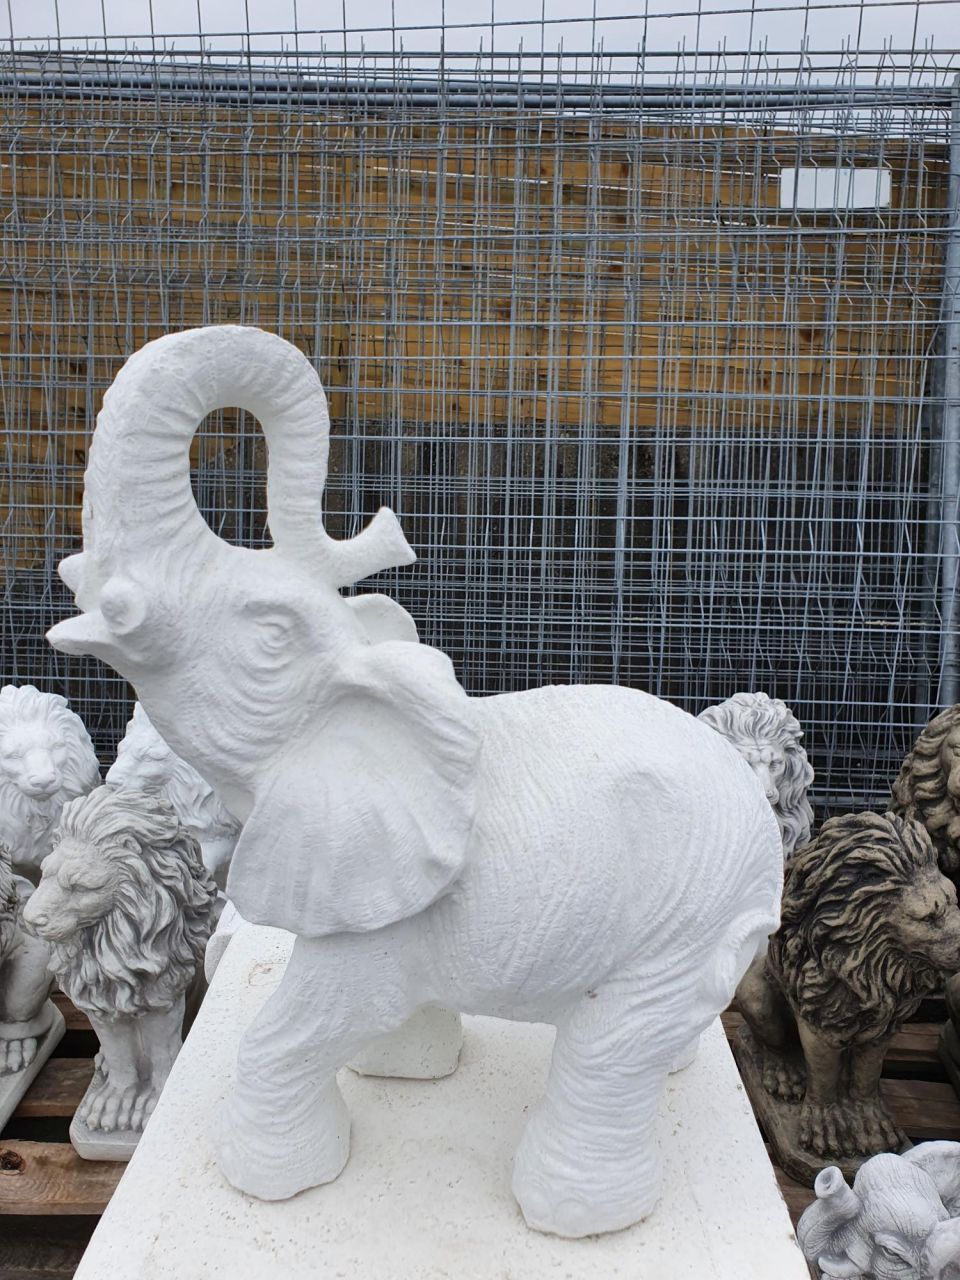 -Gartenfigur Kleiner Elefant- verschiedene Farben- unter Statuen/Skulpturen Edition Elegance